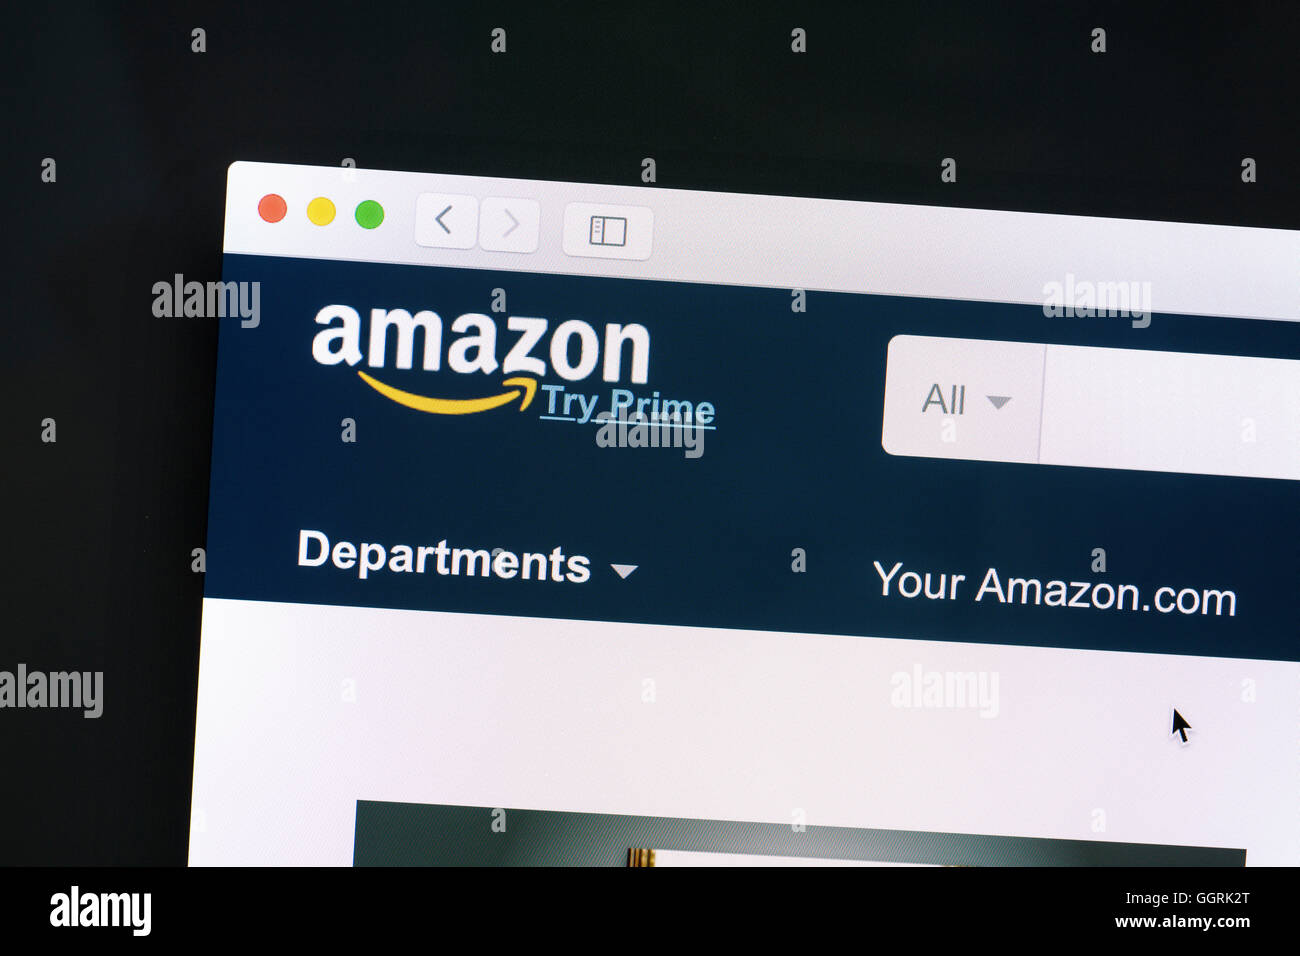 Amazon-Website auf einem Computer-Bildschirm. Amazon.com ist ein US-amerikanischer e-Commerce-Unternehmen. Stockfoto